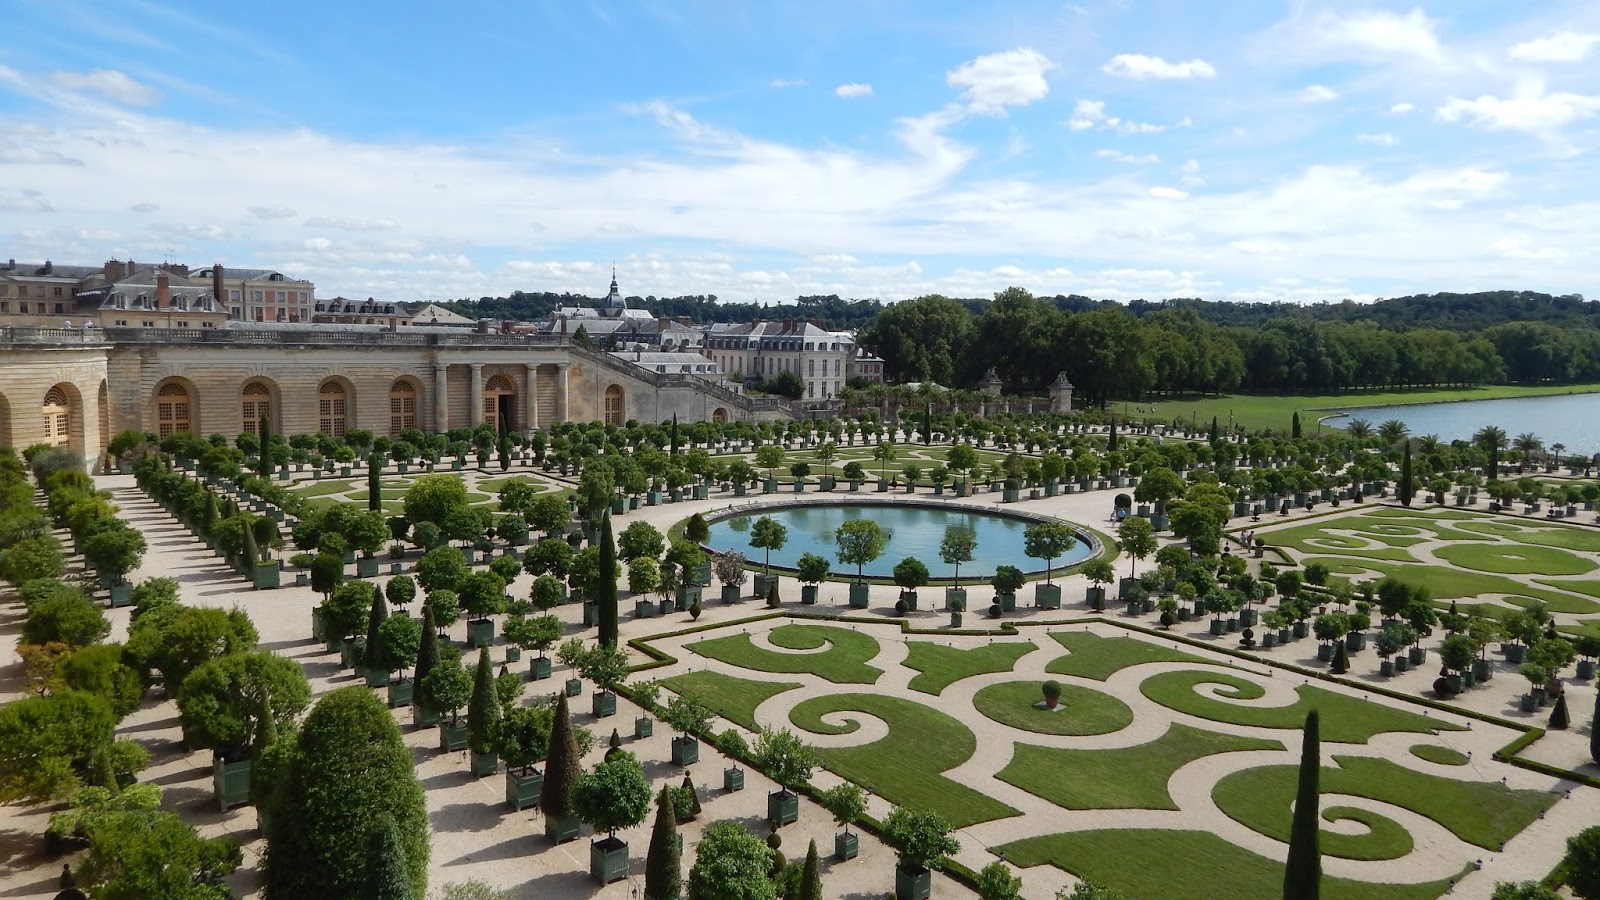 Chateau de versailles. Садовый партер Версальского дворца. Регулярный парк Версальского дворца. Версальский дворец сад амфитеатр. Сады Версаля Франция.